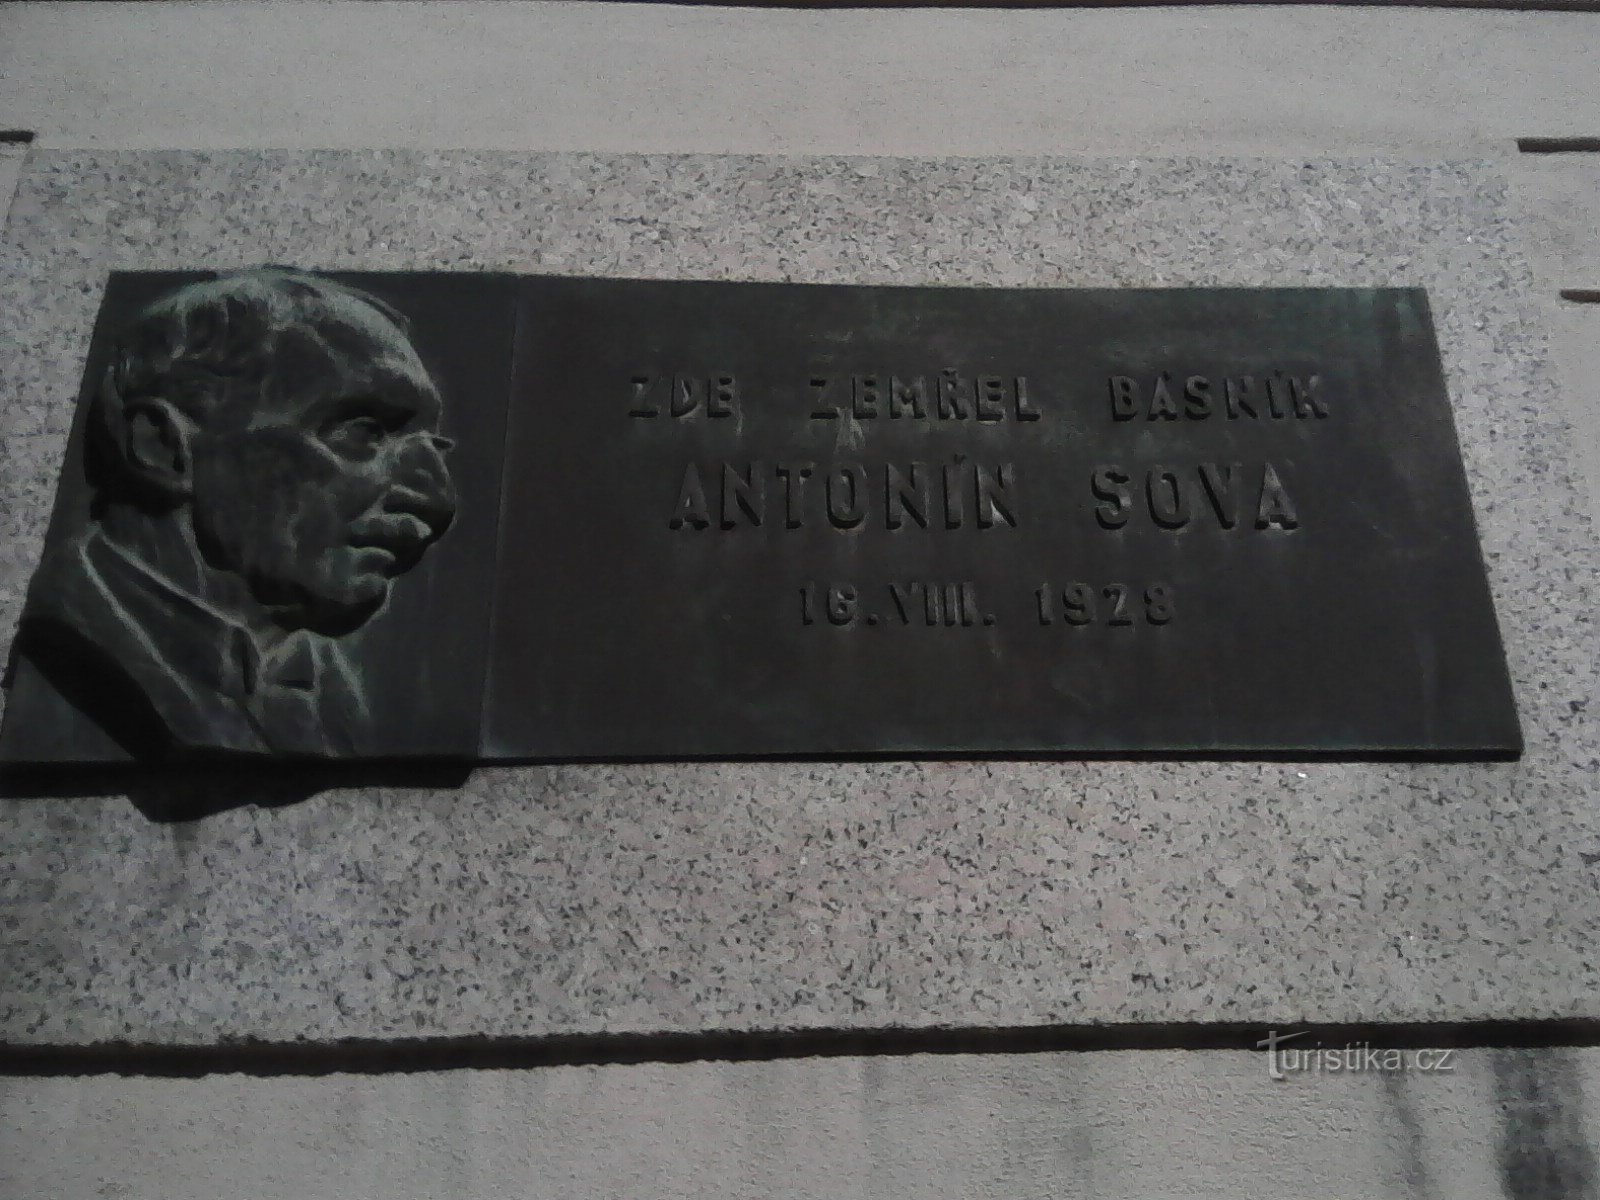 1. 同名街道上著名的帕科夫人安东尼·索瓦 (Antonín Sova) 的纪念牌匾。